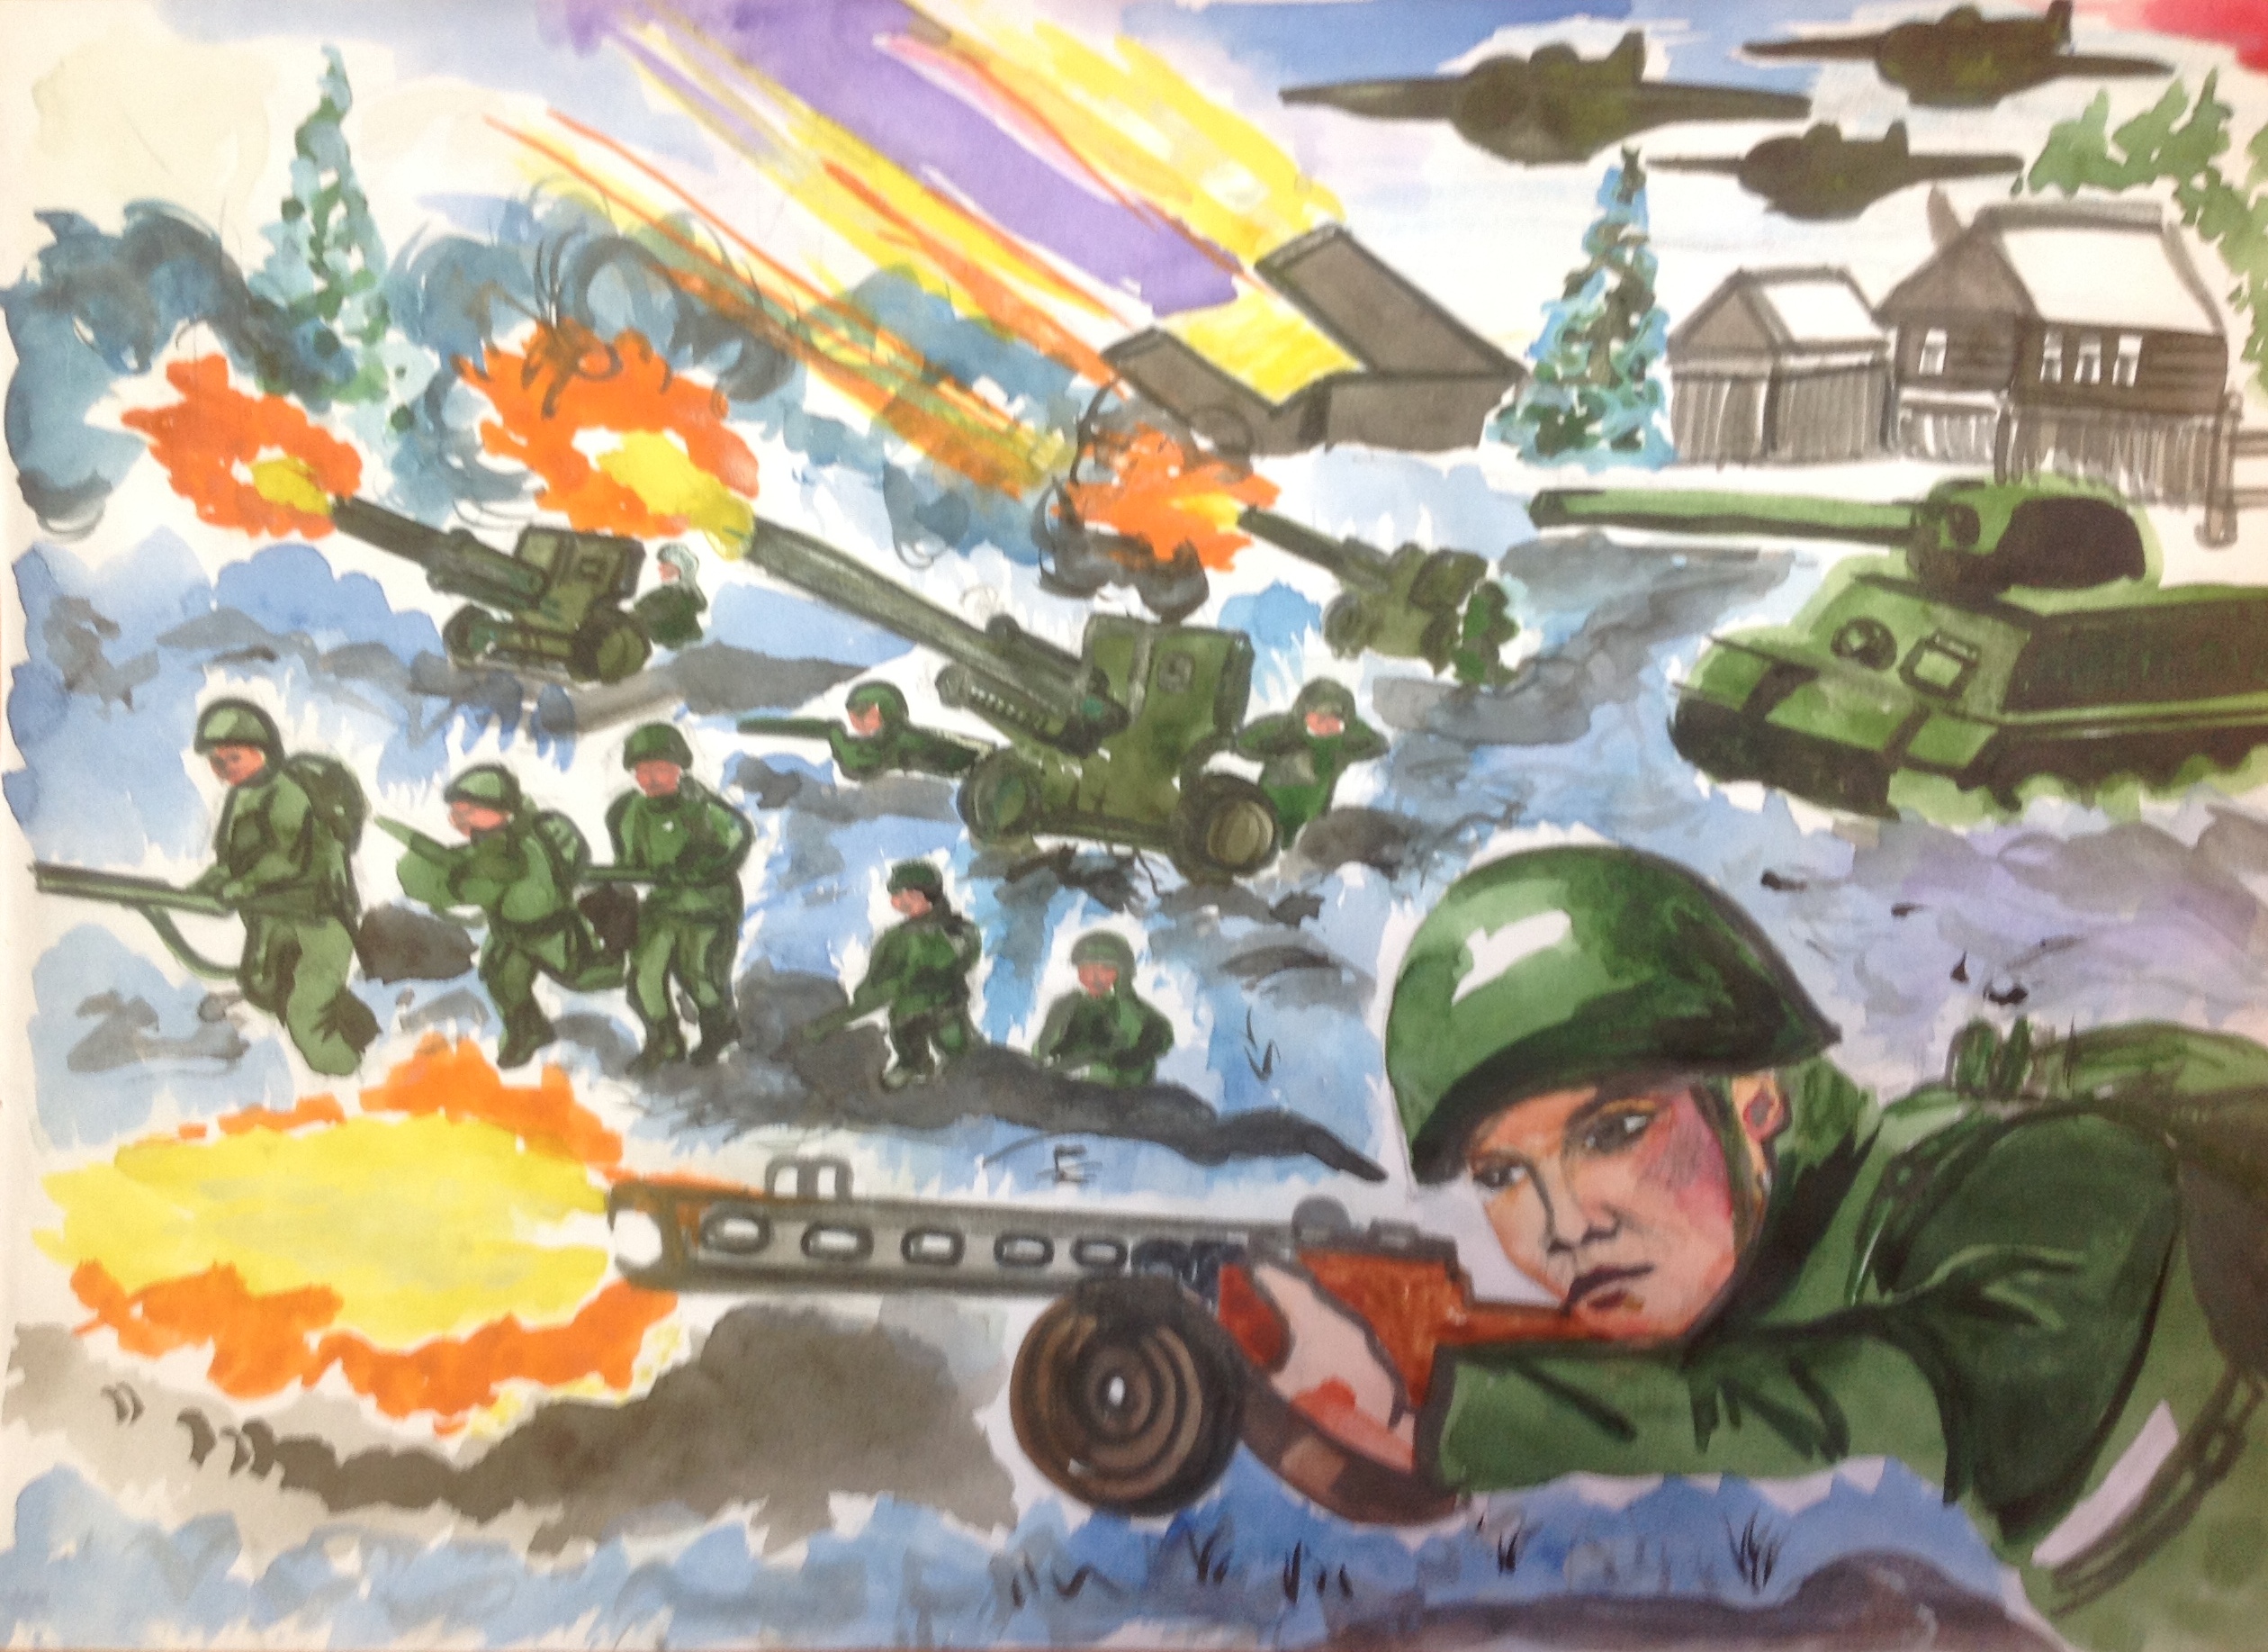 Рисунок на военную тематику